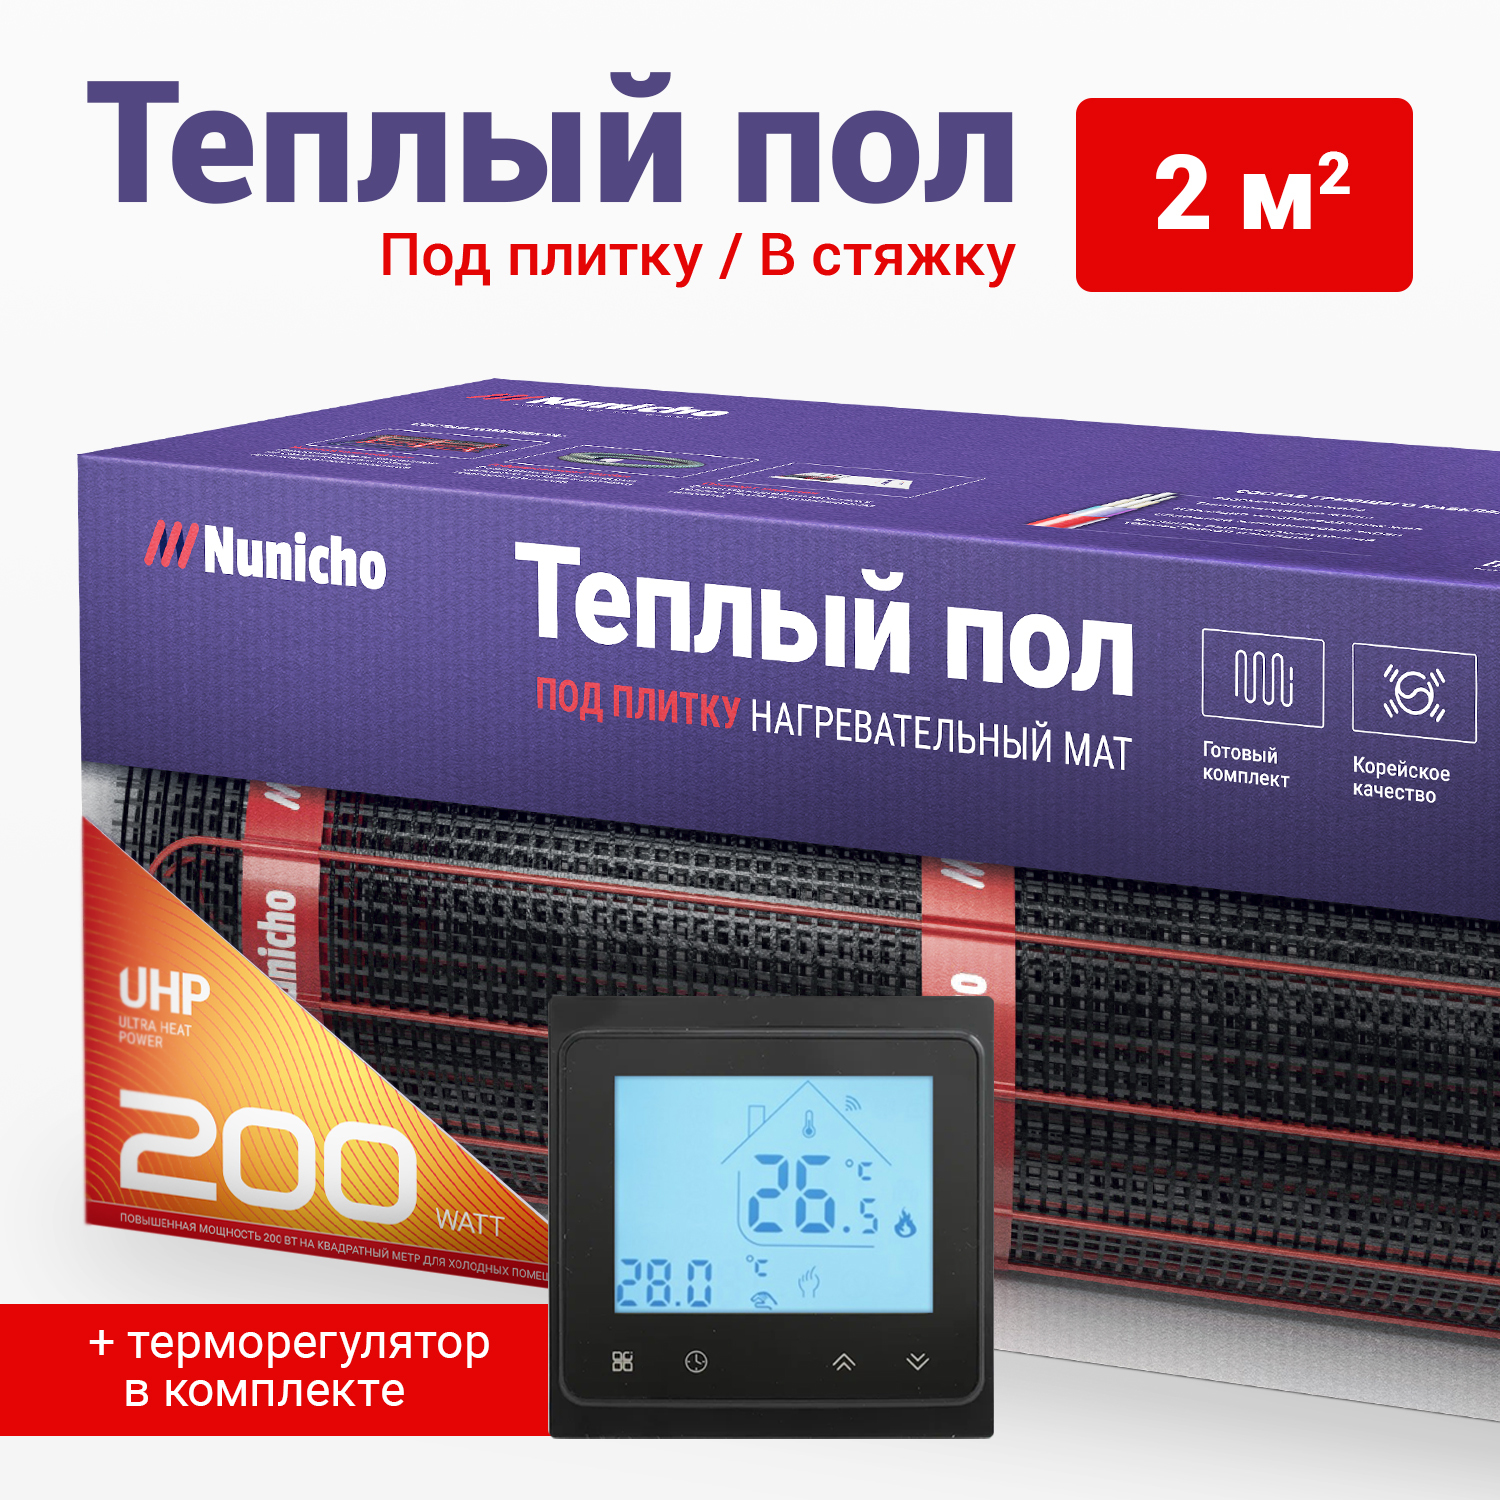 фото Теплый пол под плитку в стяжку nunicho 2 м2, 200 вт/м2 со smart-терморегулятором черным